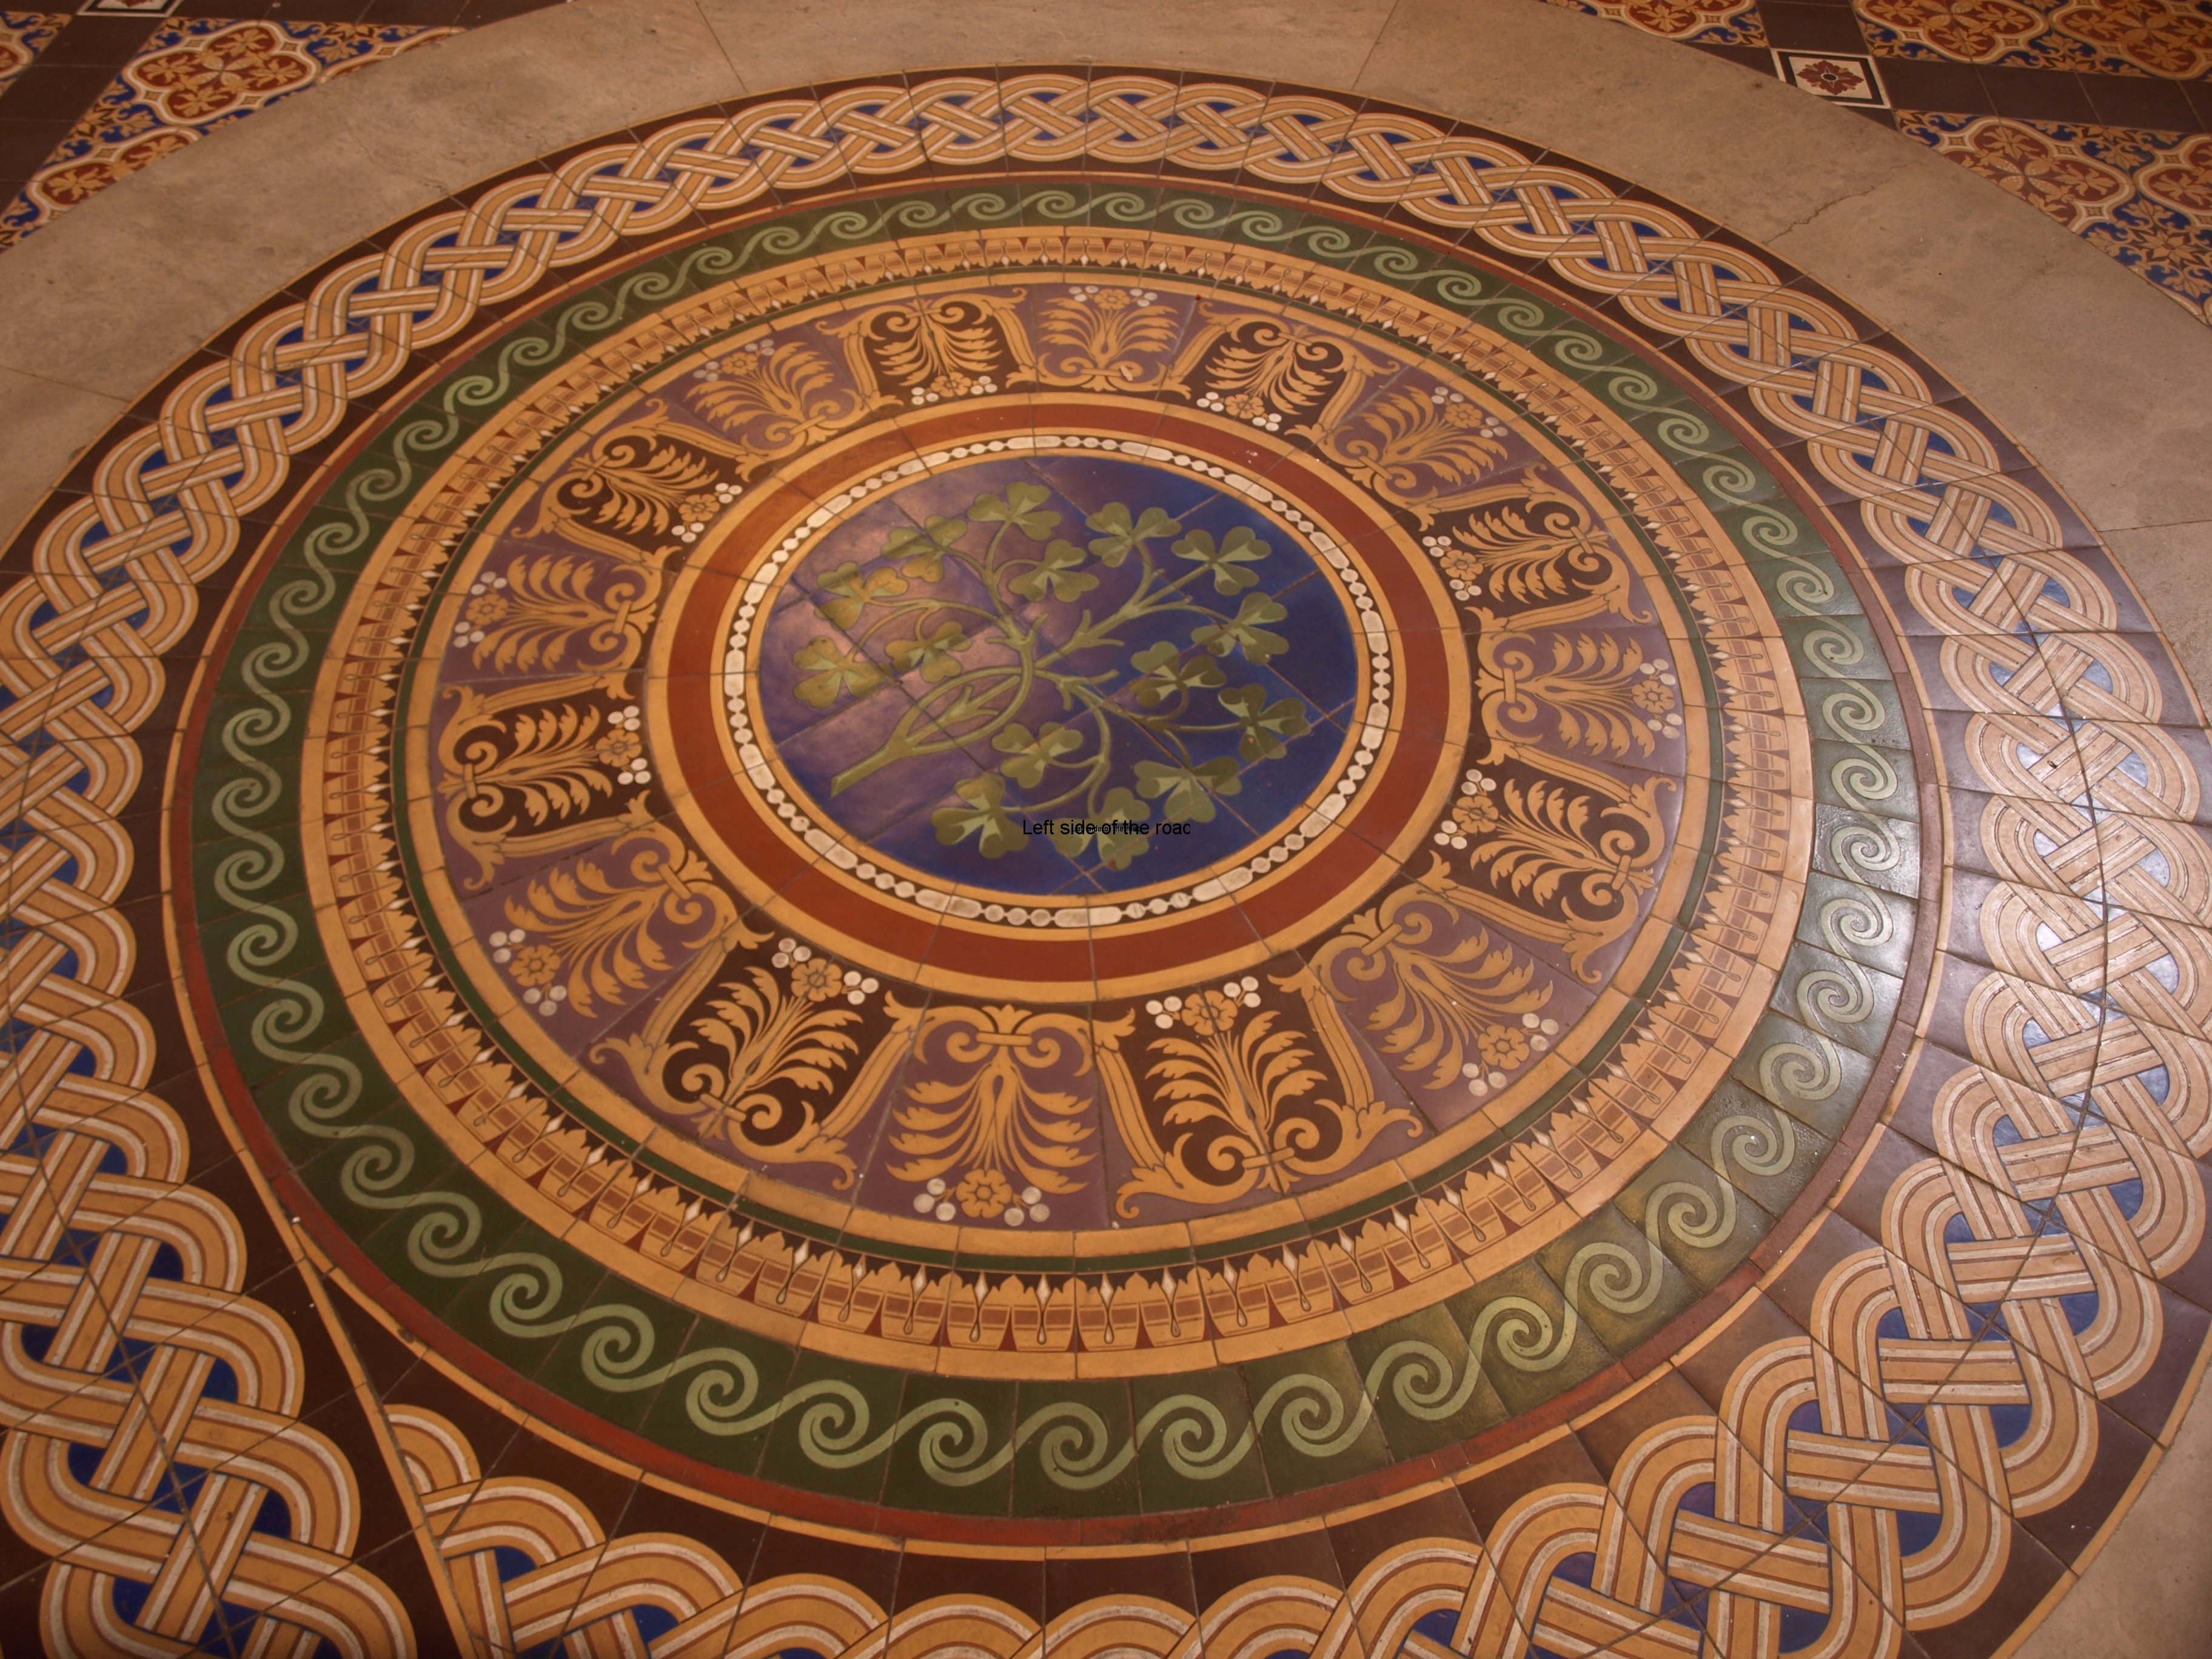 Minton Tile Floor, St George's Hall Liverpool